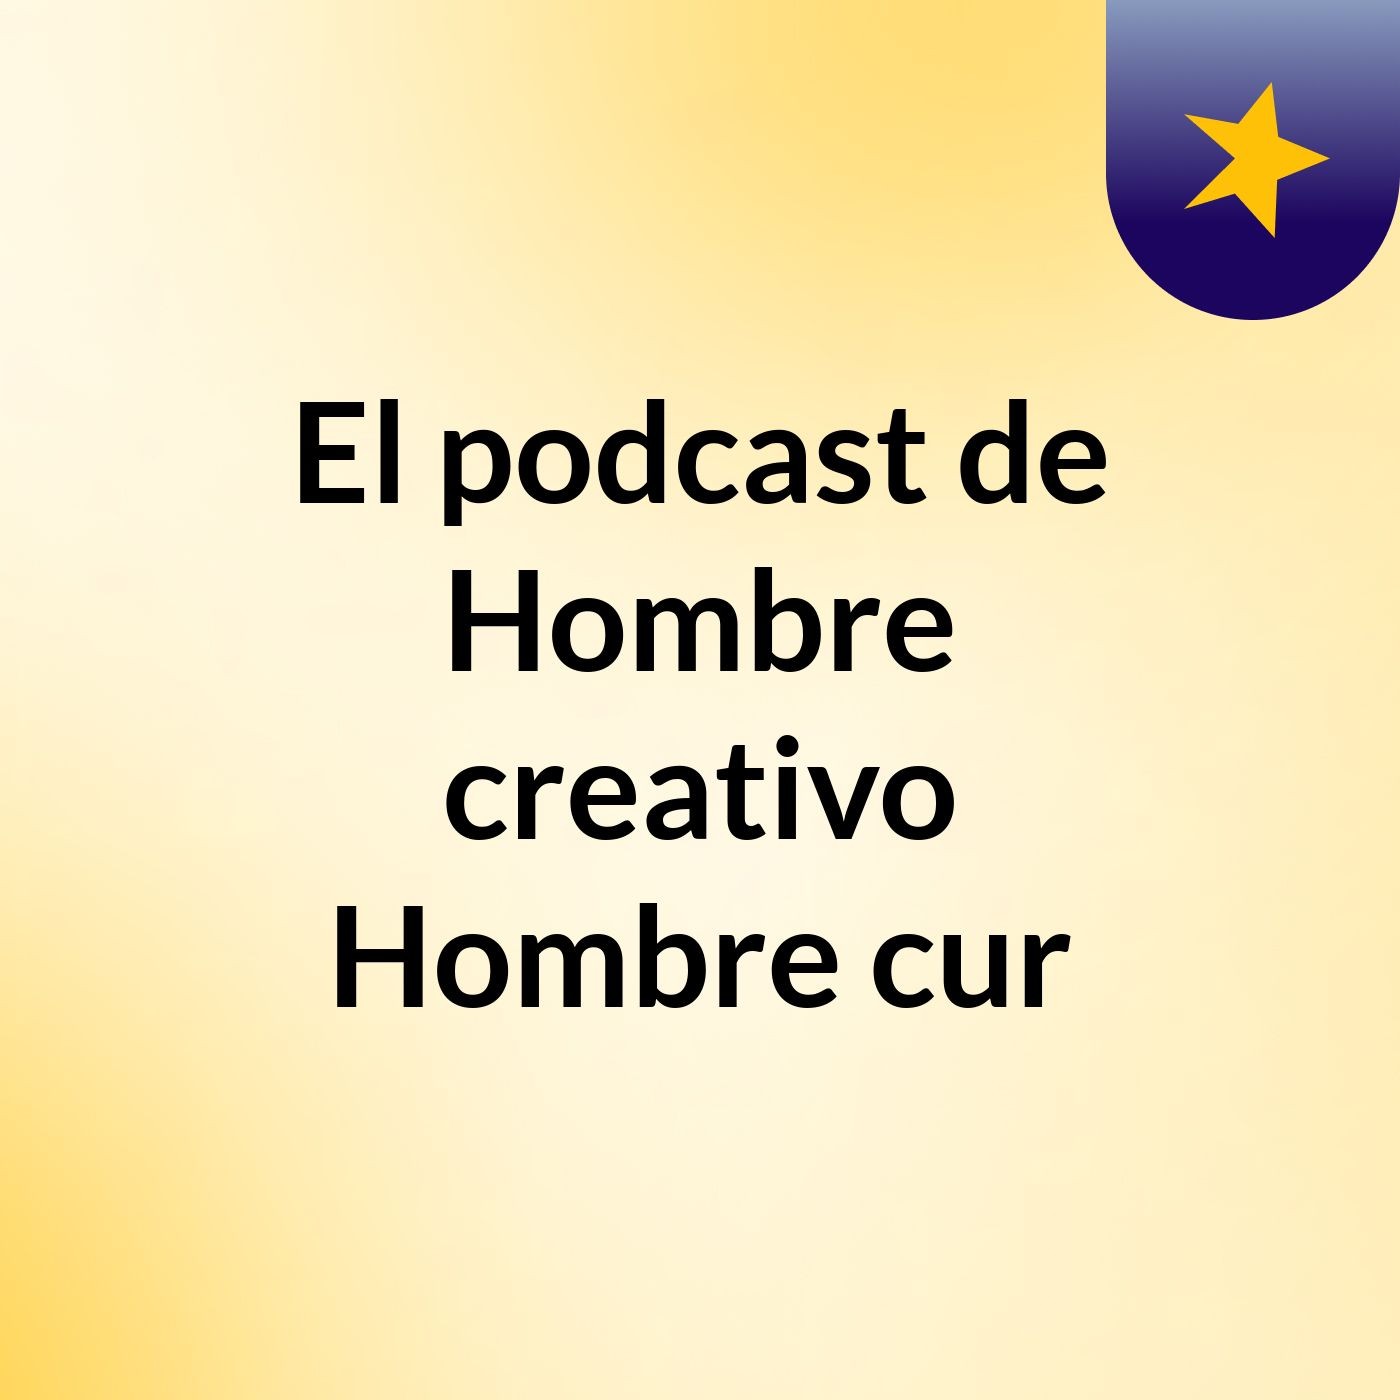 El podcast de Hombre creativo Hombre cur